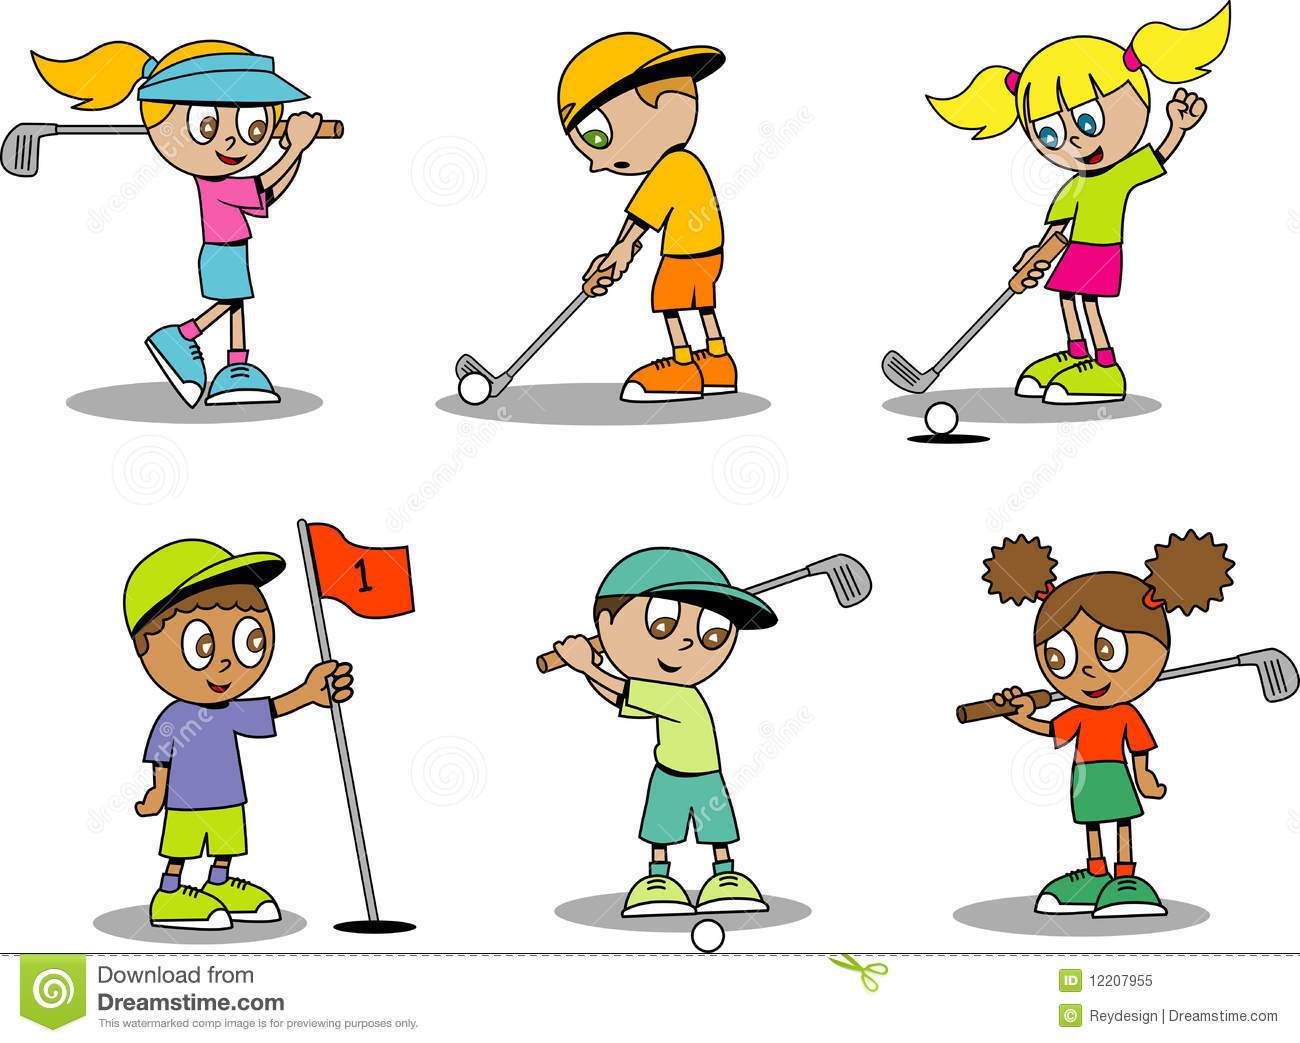 Kids playing golf.